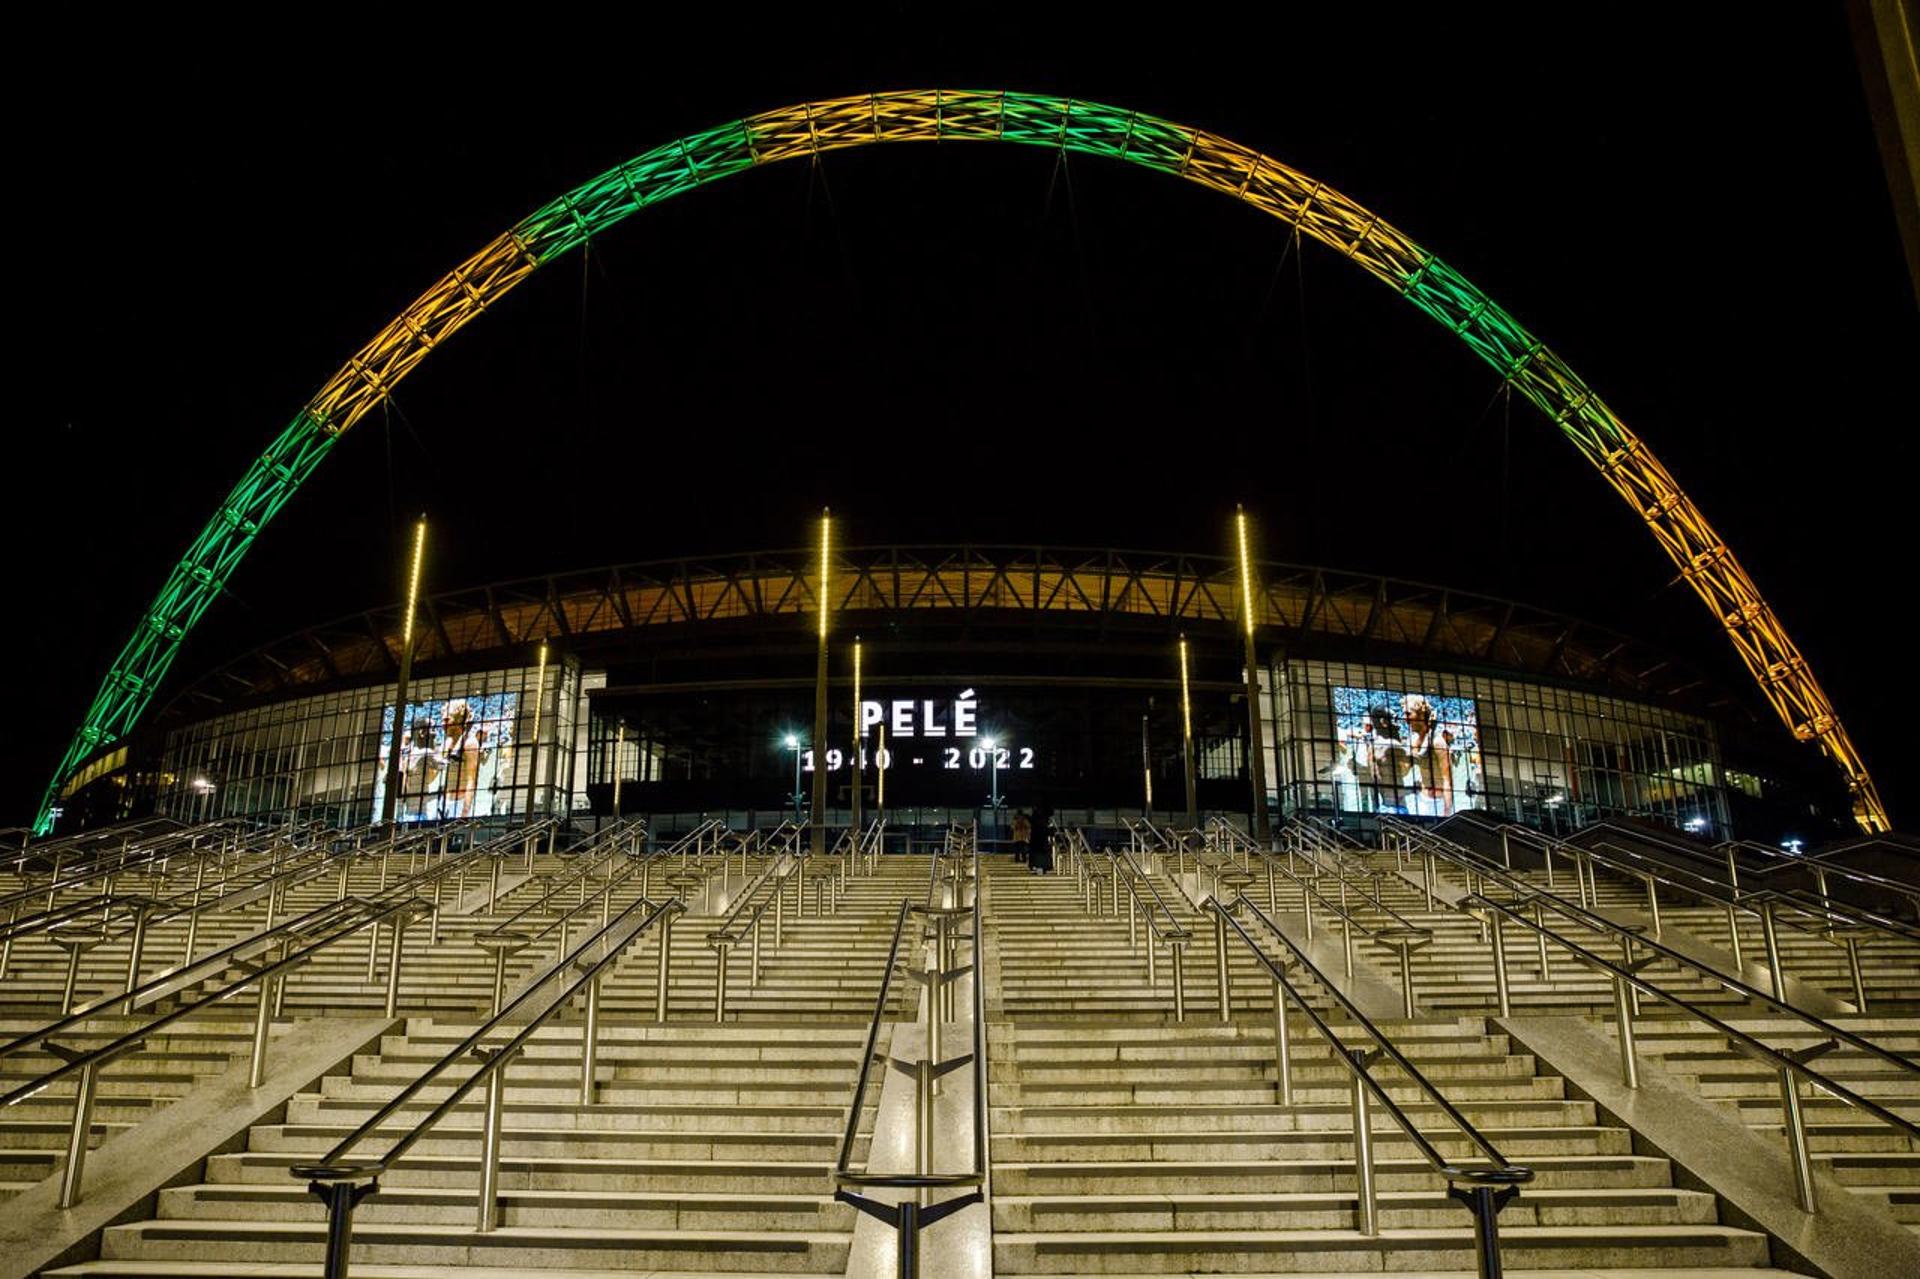 Wembley - Pelé